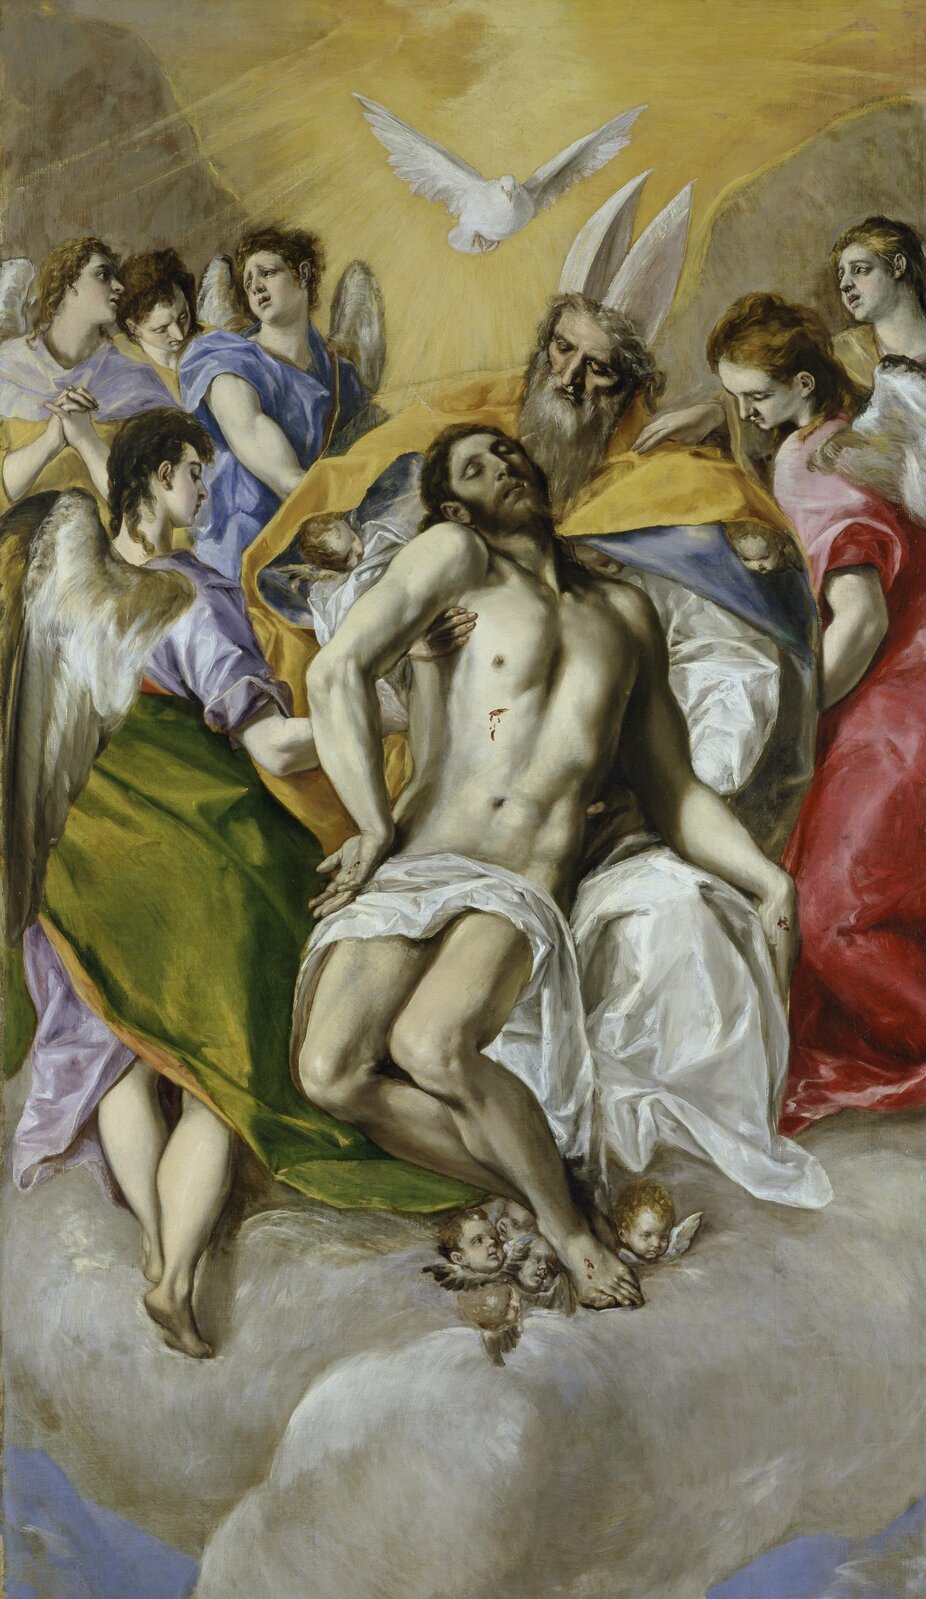 Ilustracja o kształcie pionowego prostokąta  przedstawia obraz El Greca „Trójca Święta”. Ukazuje Trójcę  świętą oraz towarzyszące im anioły. Bóg Ojciec podtrzymuje ciało martwego Syna. Przedstawiony jest jako starszy, potężnie zbudowany mężczyzna Na głowie ma założoną mitrę. Jezus ma na ciele widoczne rany. Nad nimi, w postaci gołębicy, unosi się Duch Święty otoczony jaskrawym, żółto-pomarańczowym światłem. Anioły otaczają scenę, adorując. Pod nogami Jezusa i połami płaszcza Boga widoczne są głowy cherubinów. 